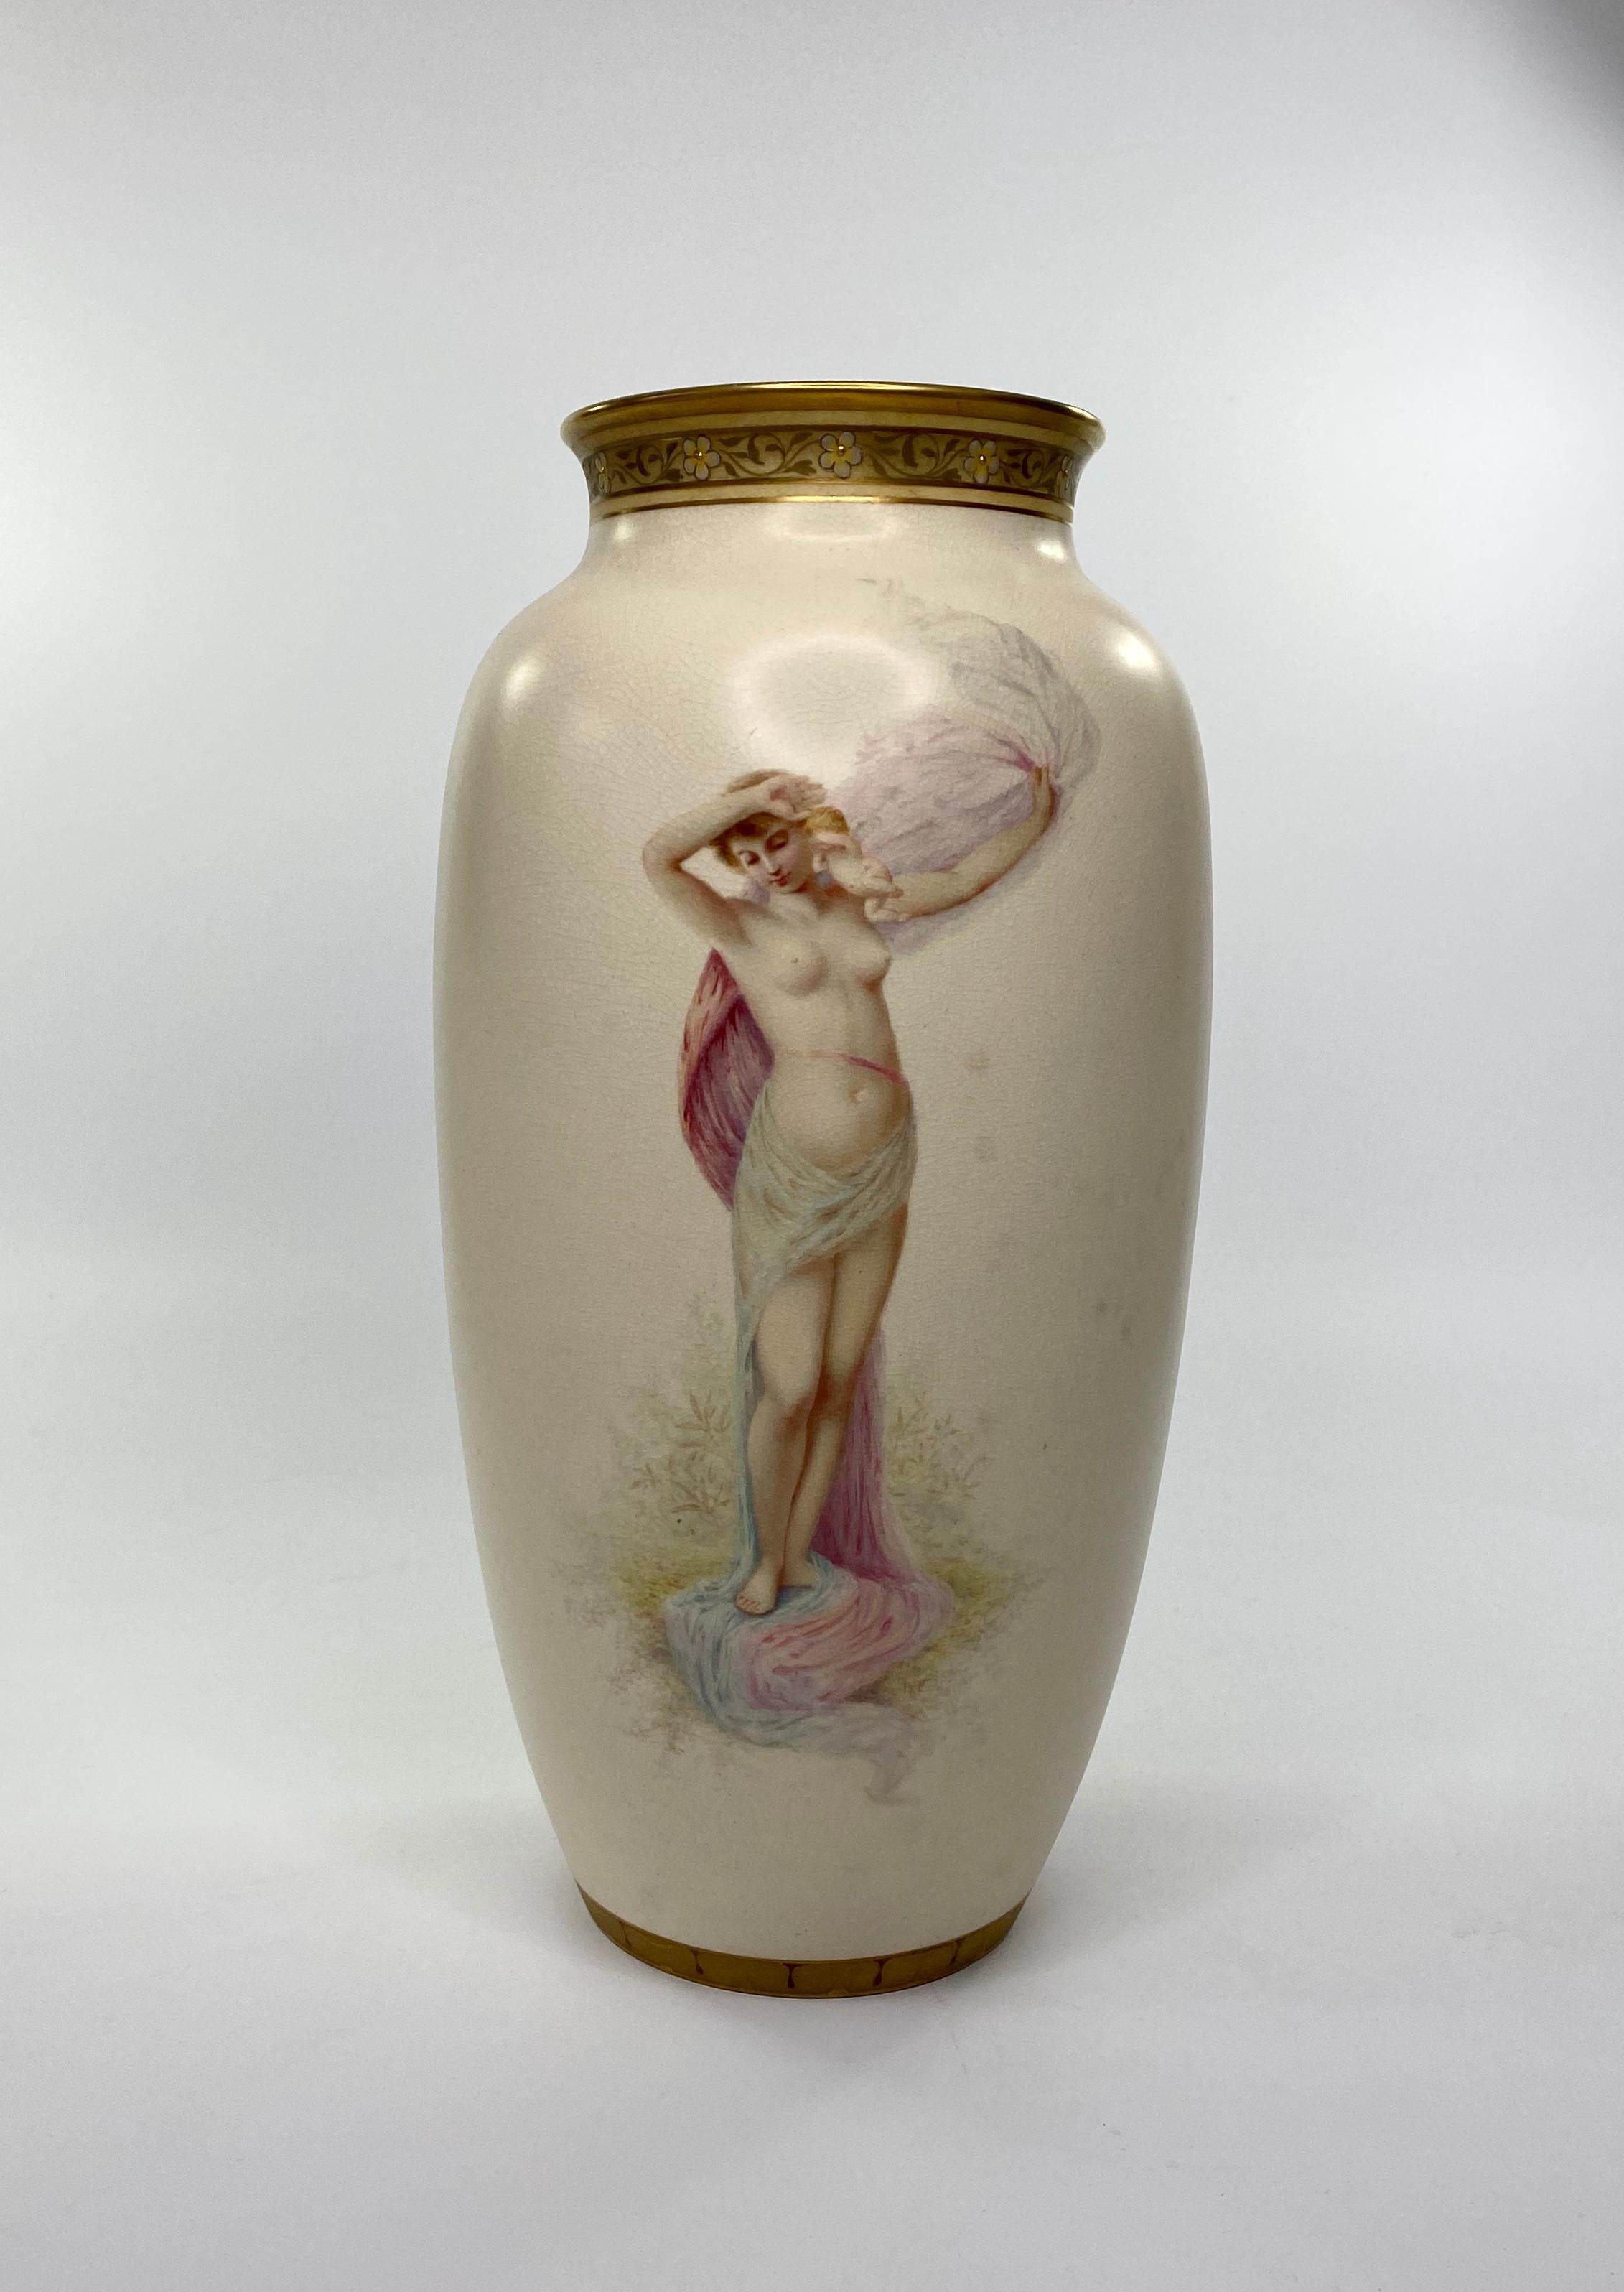 Une belle paire de vases en faïence Doulton Lambeth, peints par John P. Hewitt, vers 1885. Les deux vases, magnifiquement peints à la main, représentent des filles semi-nues, posant dans des draps diaphanes, tout en étant debout, pieds nus sur